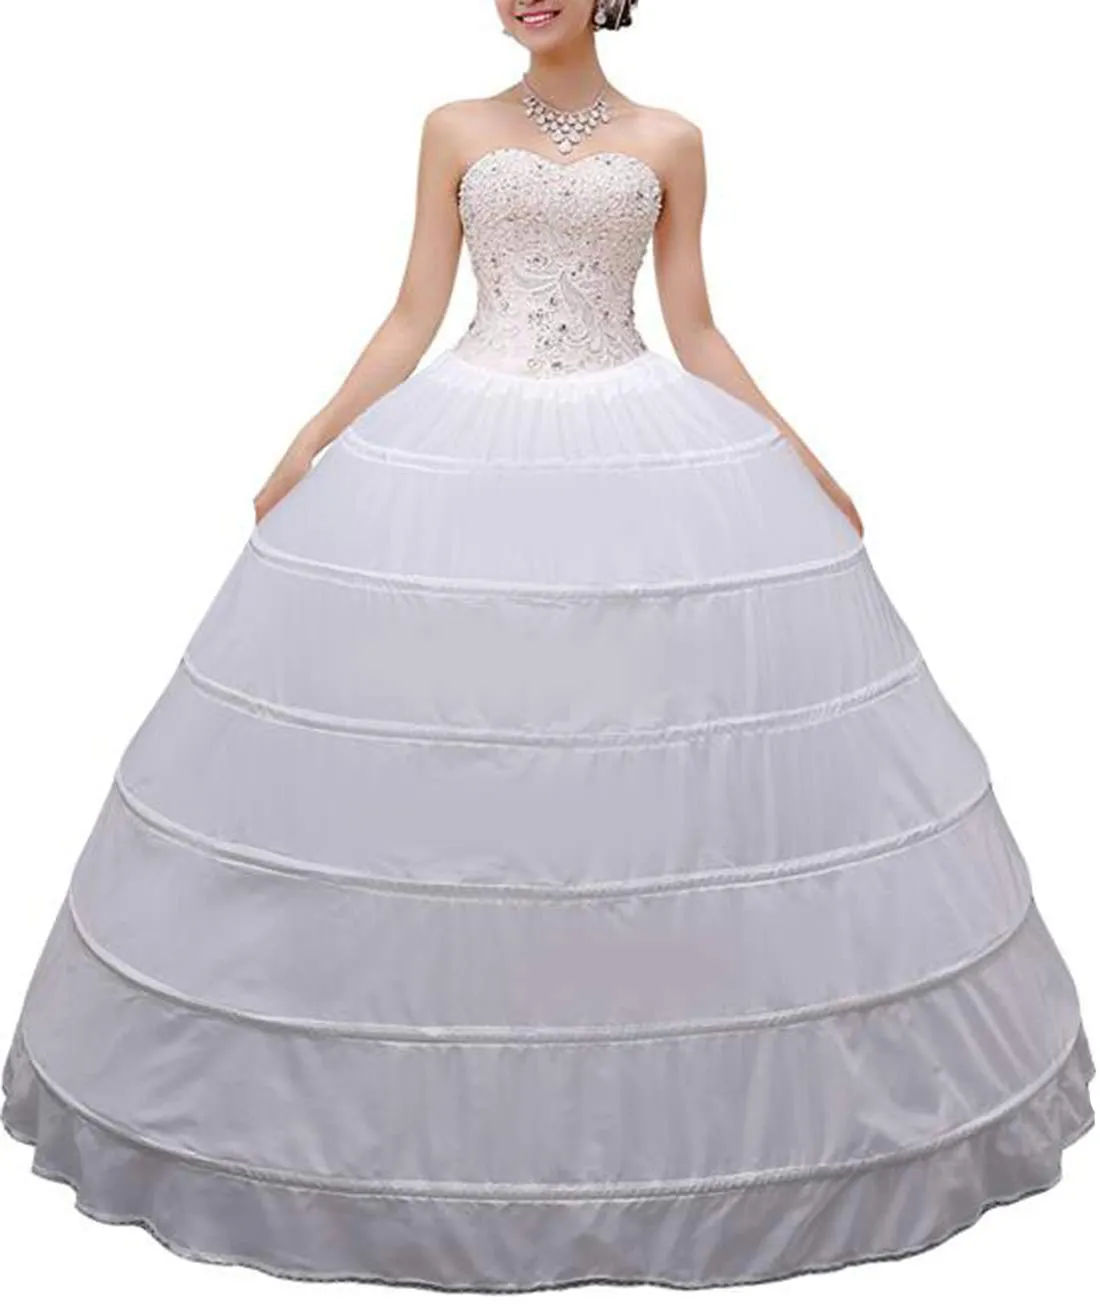 Haute qualité femmes Crinoline jupon robe de bal 6 cerceau jupe glisse longue sous-jupe pour mariage robe de mariée robe de bal 2620